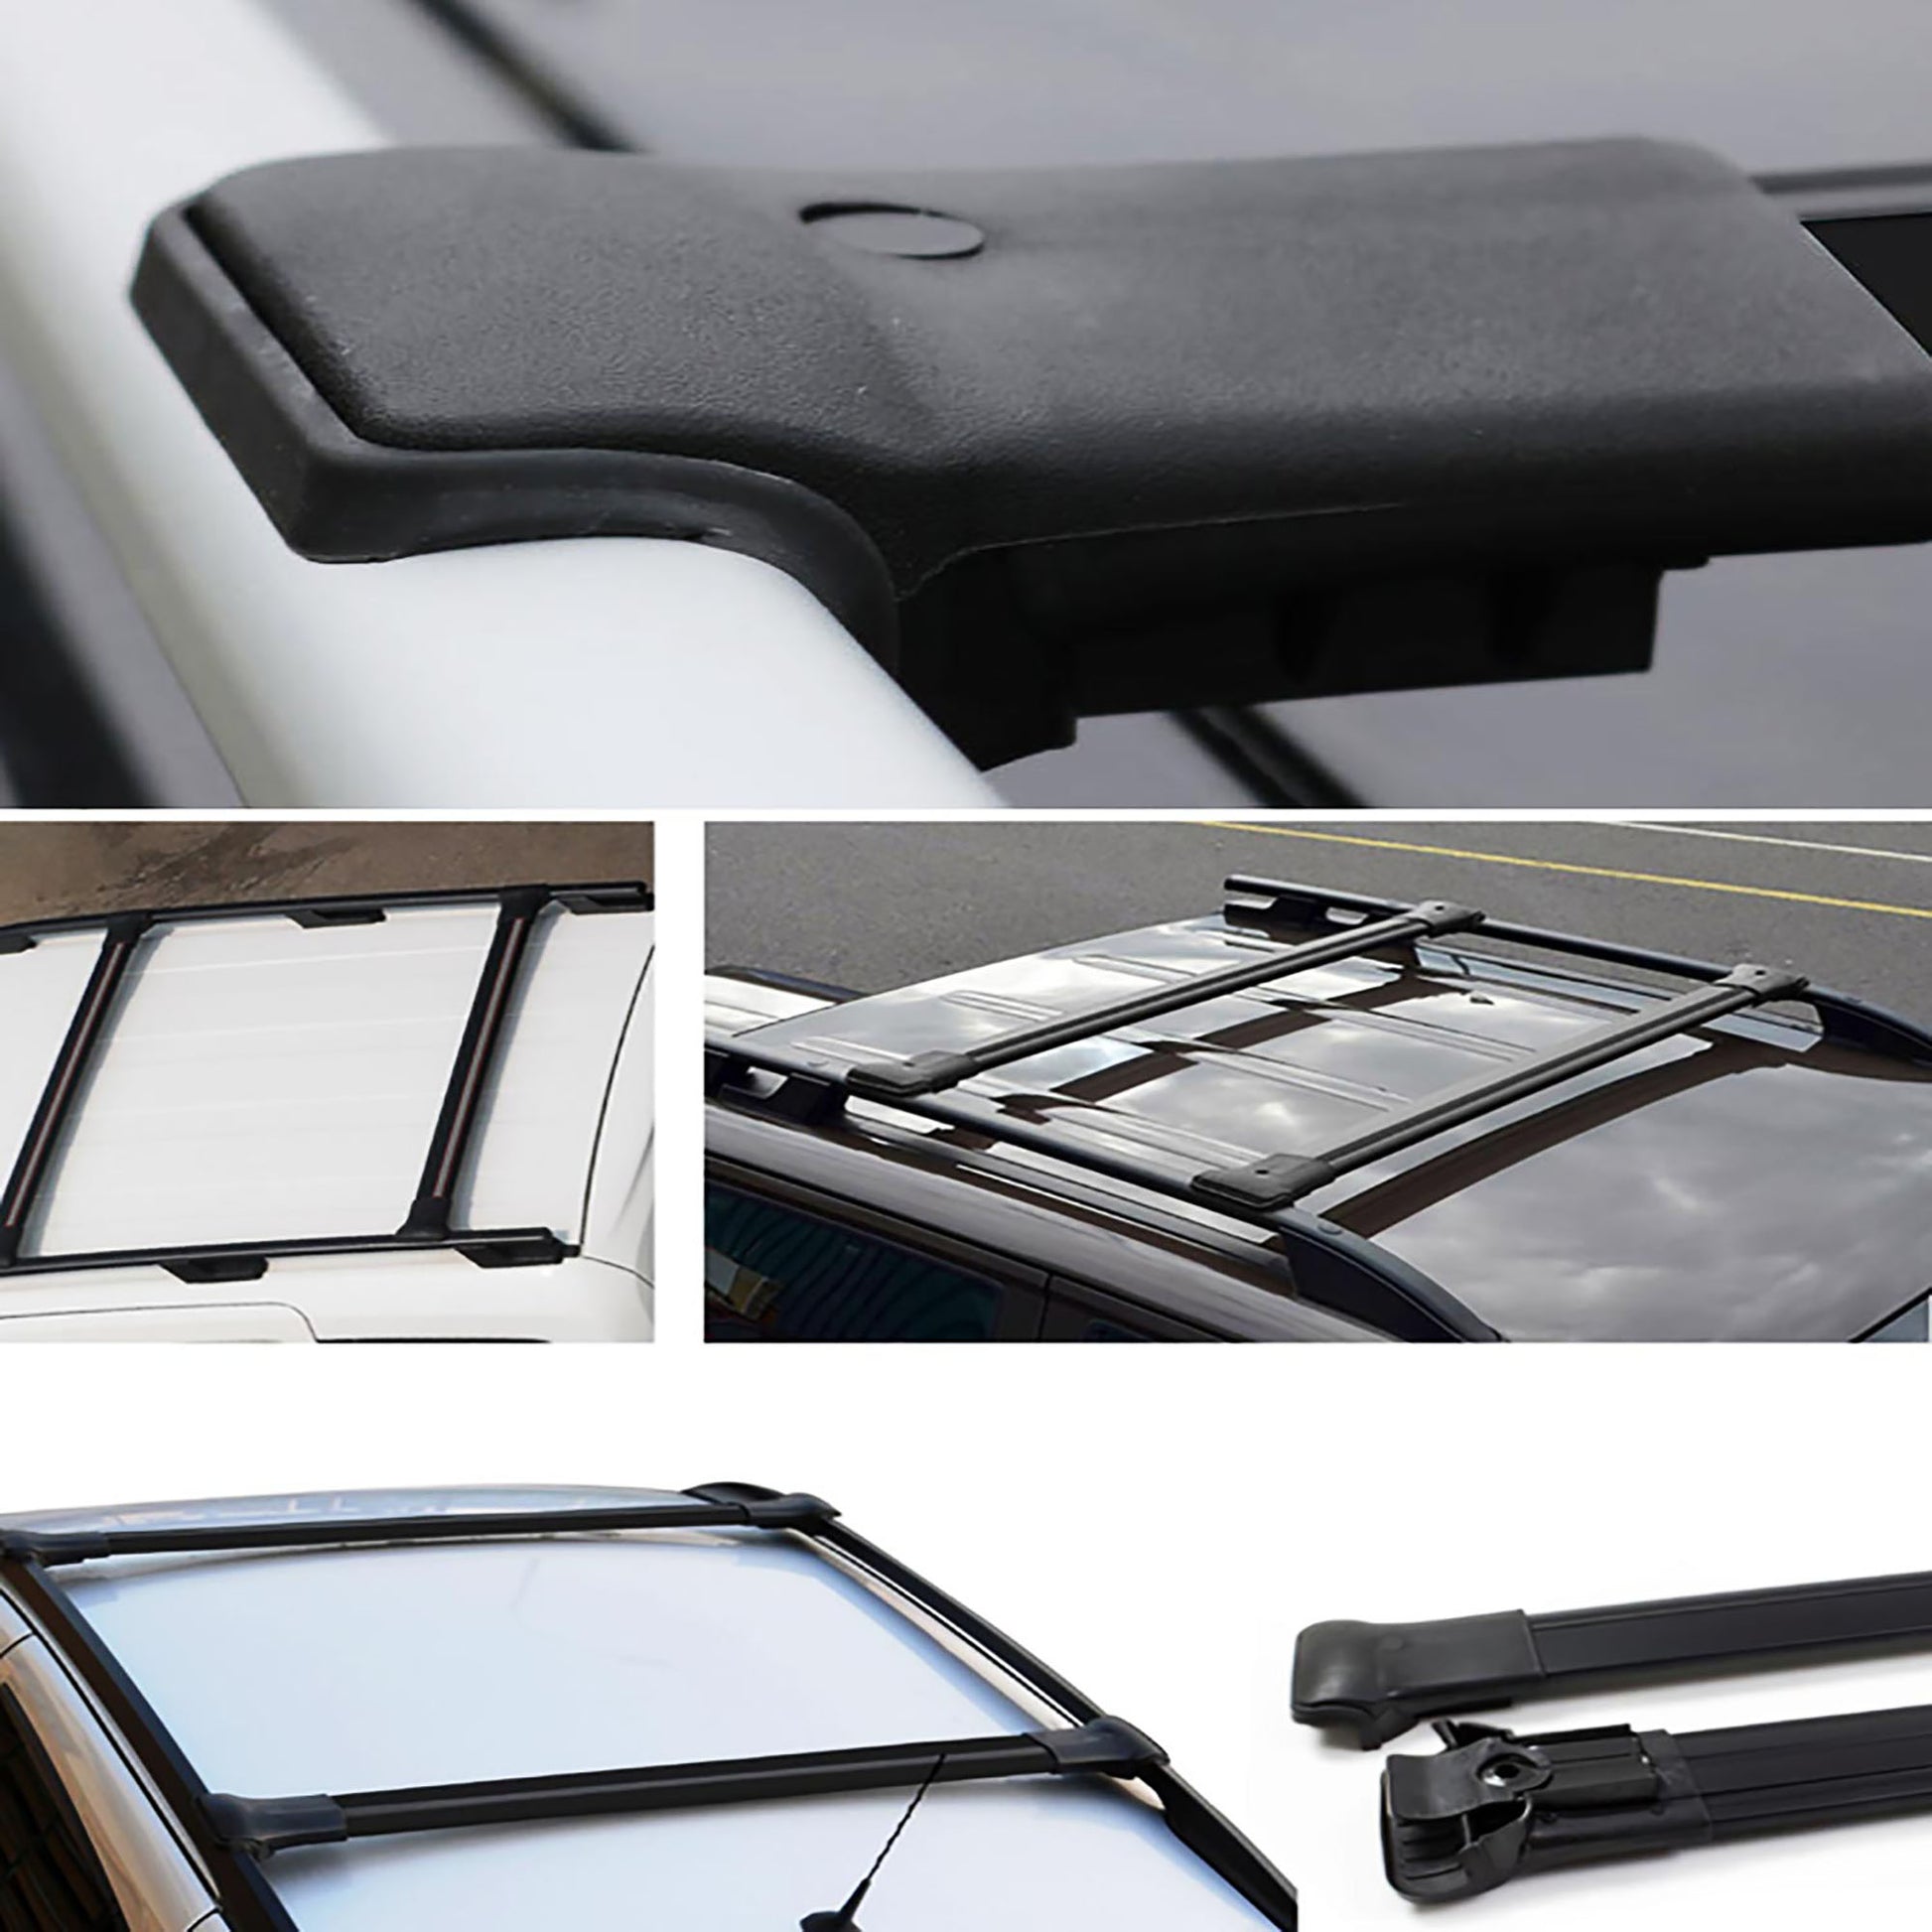 Peugeot Expert Ara Atkı - Elegance V1 - Siyah Aksesuarları Detaylı Resimleri, Kampanya bilgileri ve fiyatı - 4